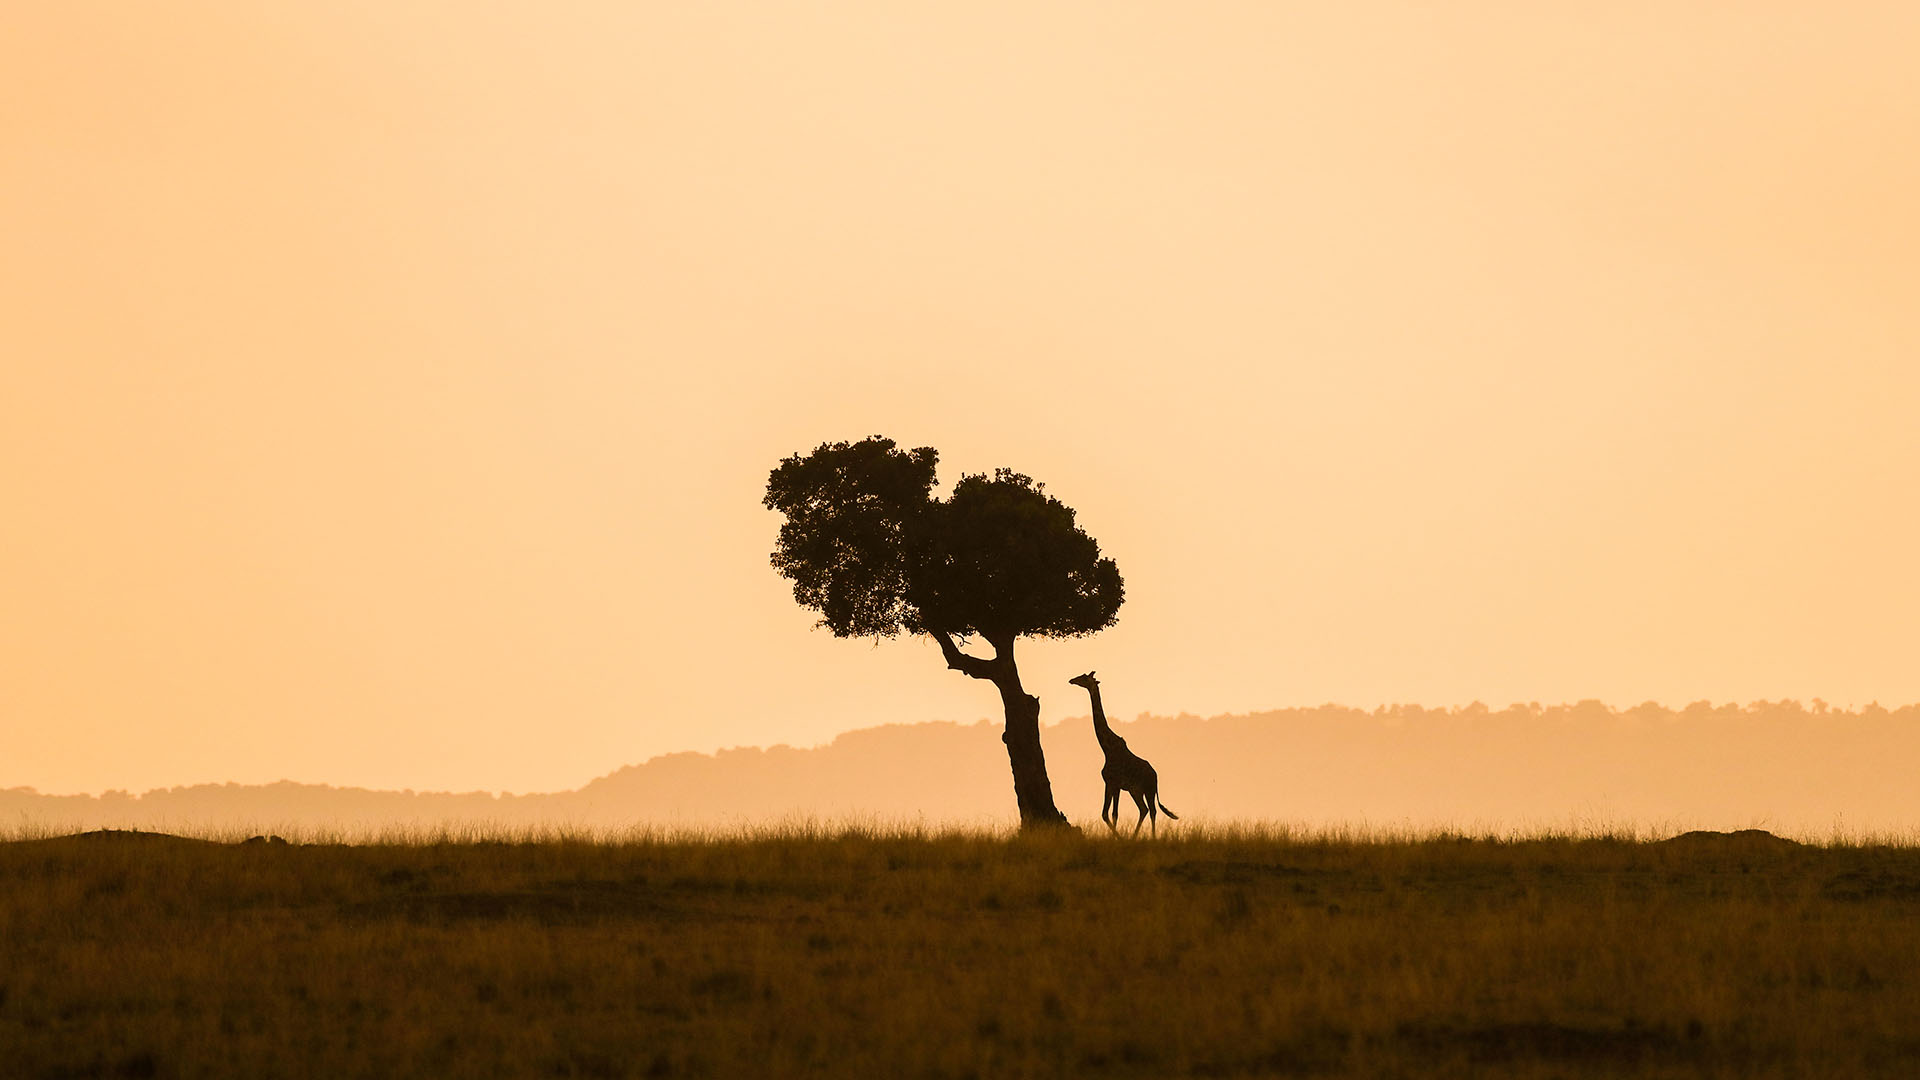 Silhouetten von Baum und Giraffe bei Sonnenuntergangsstimmung im "Maasai Mara Nationalreservat" in Kenia | picture alliance / Photoshot